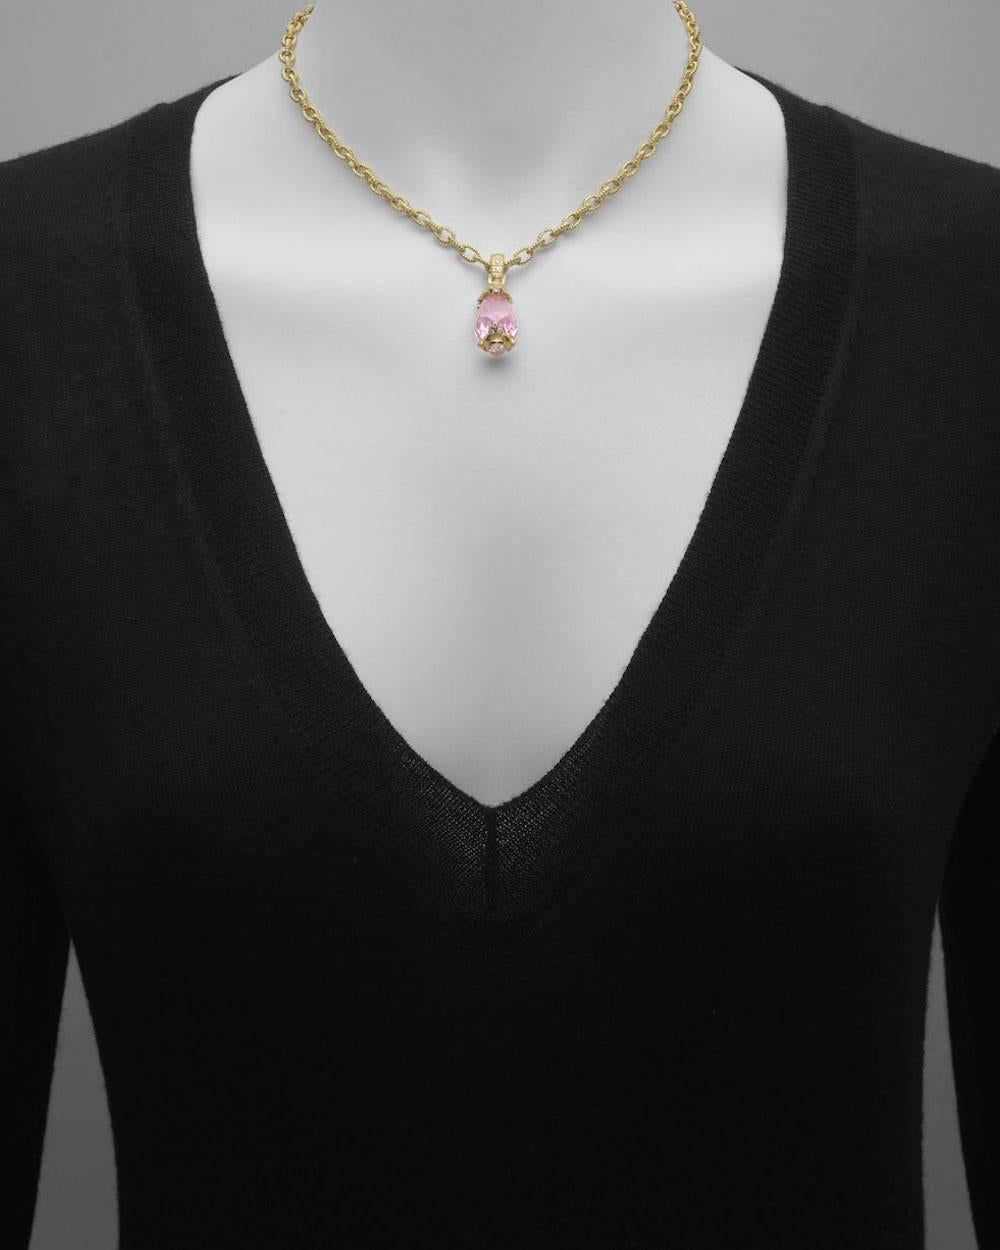 Pendant necklace, centering a faceted pink quartz drop, on a 16